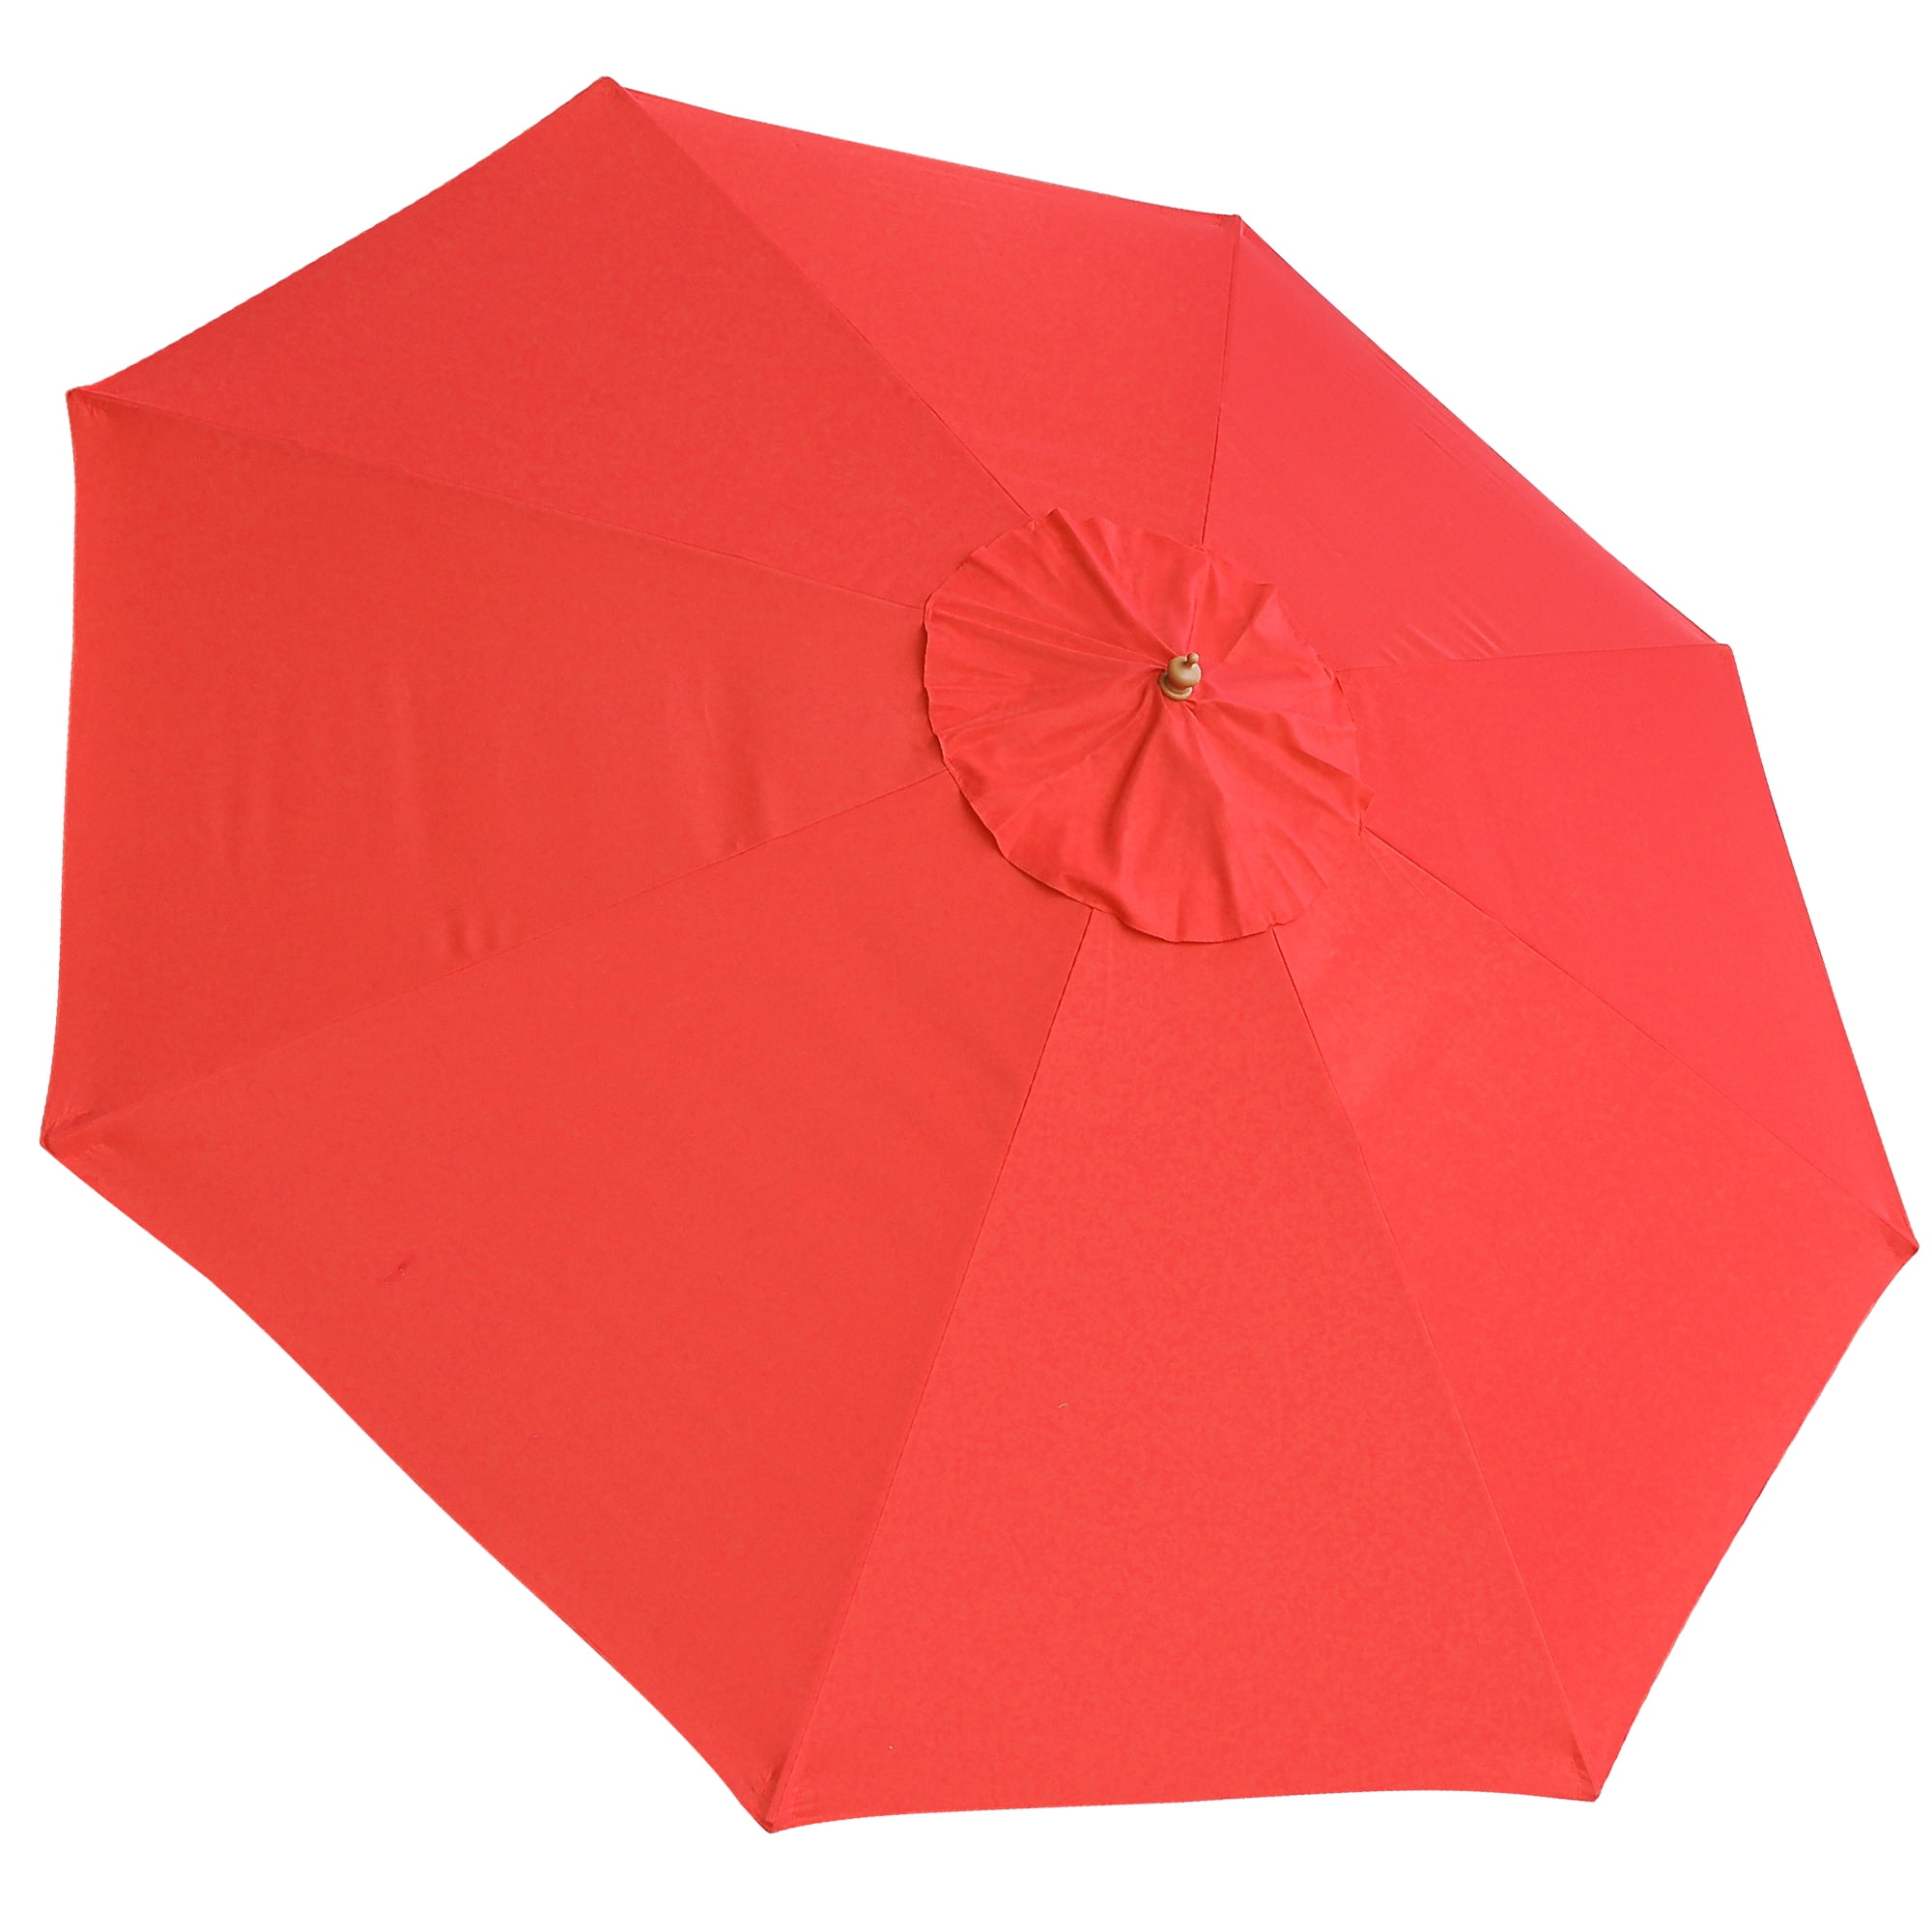 13FT Patio Umbrella w/ 48 LED Outdoor Market Beach Garden Cover 8 Rib Top Canopy